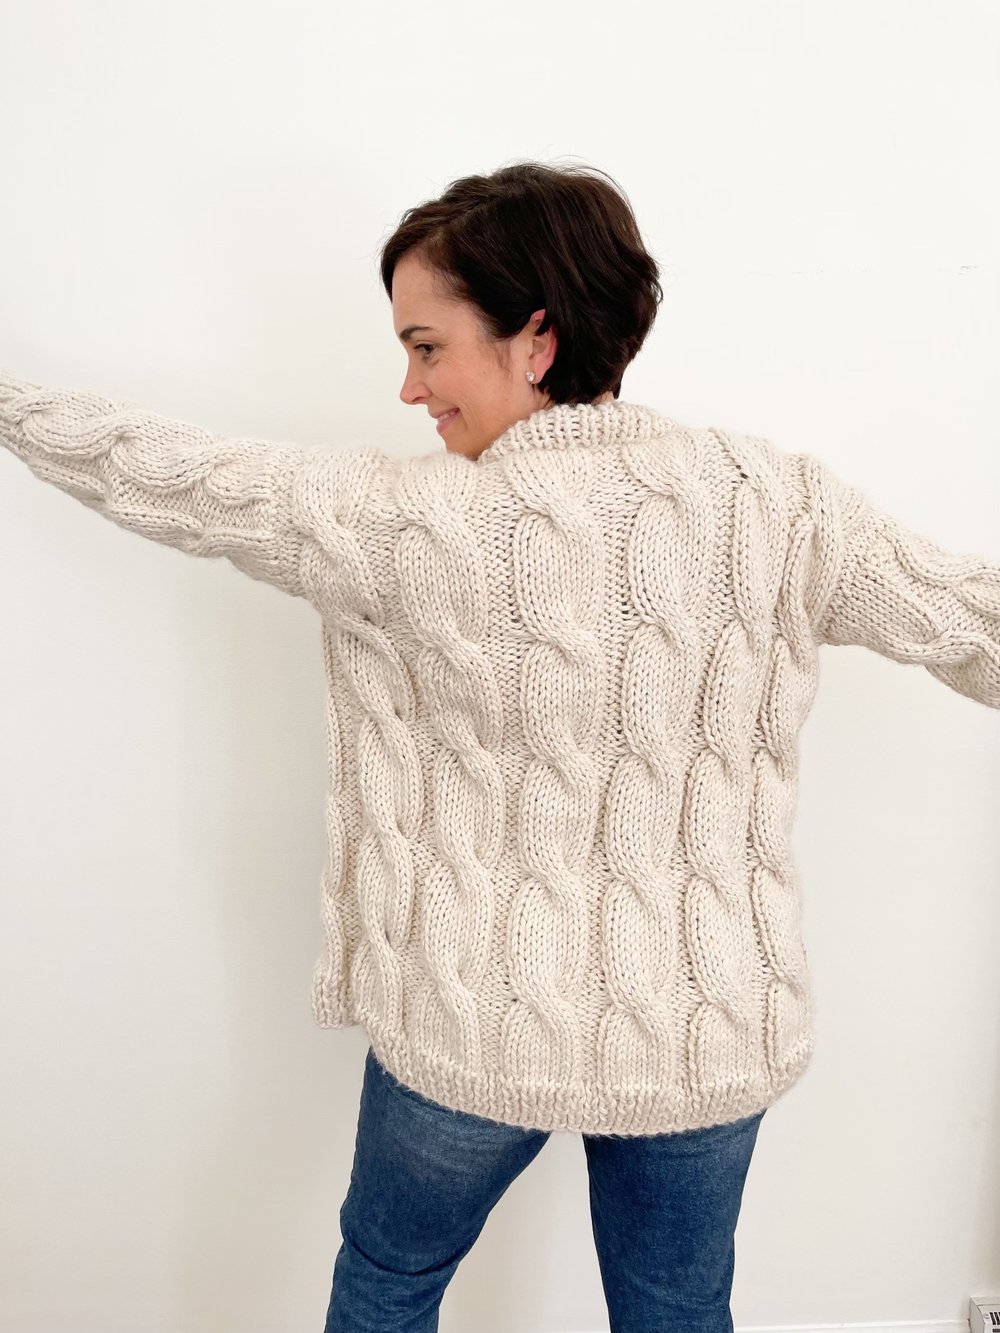 Knitting Patterns — Ashley Lillis